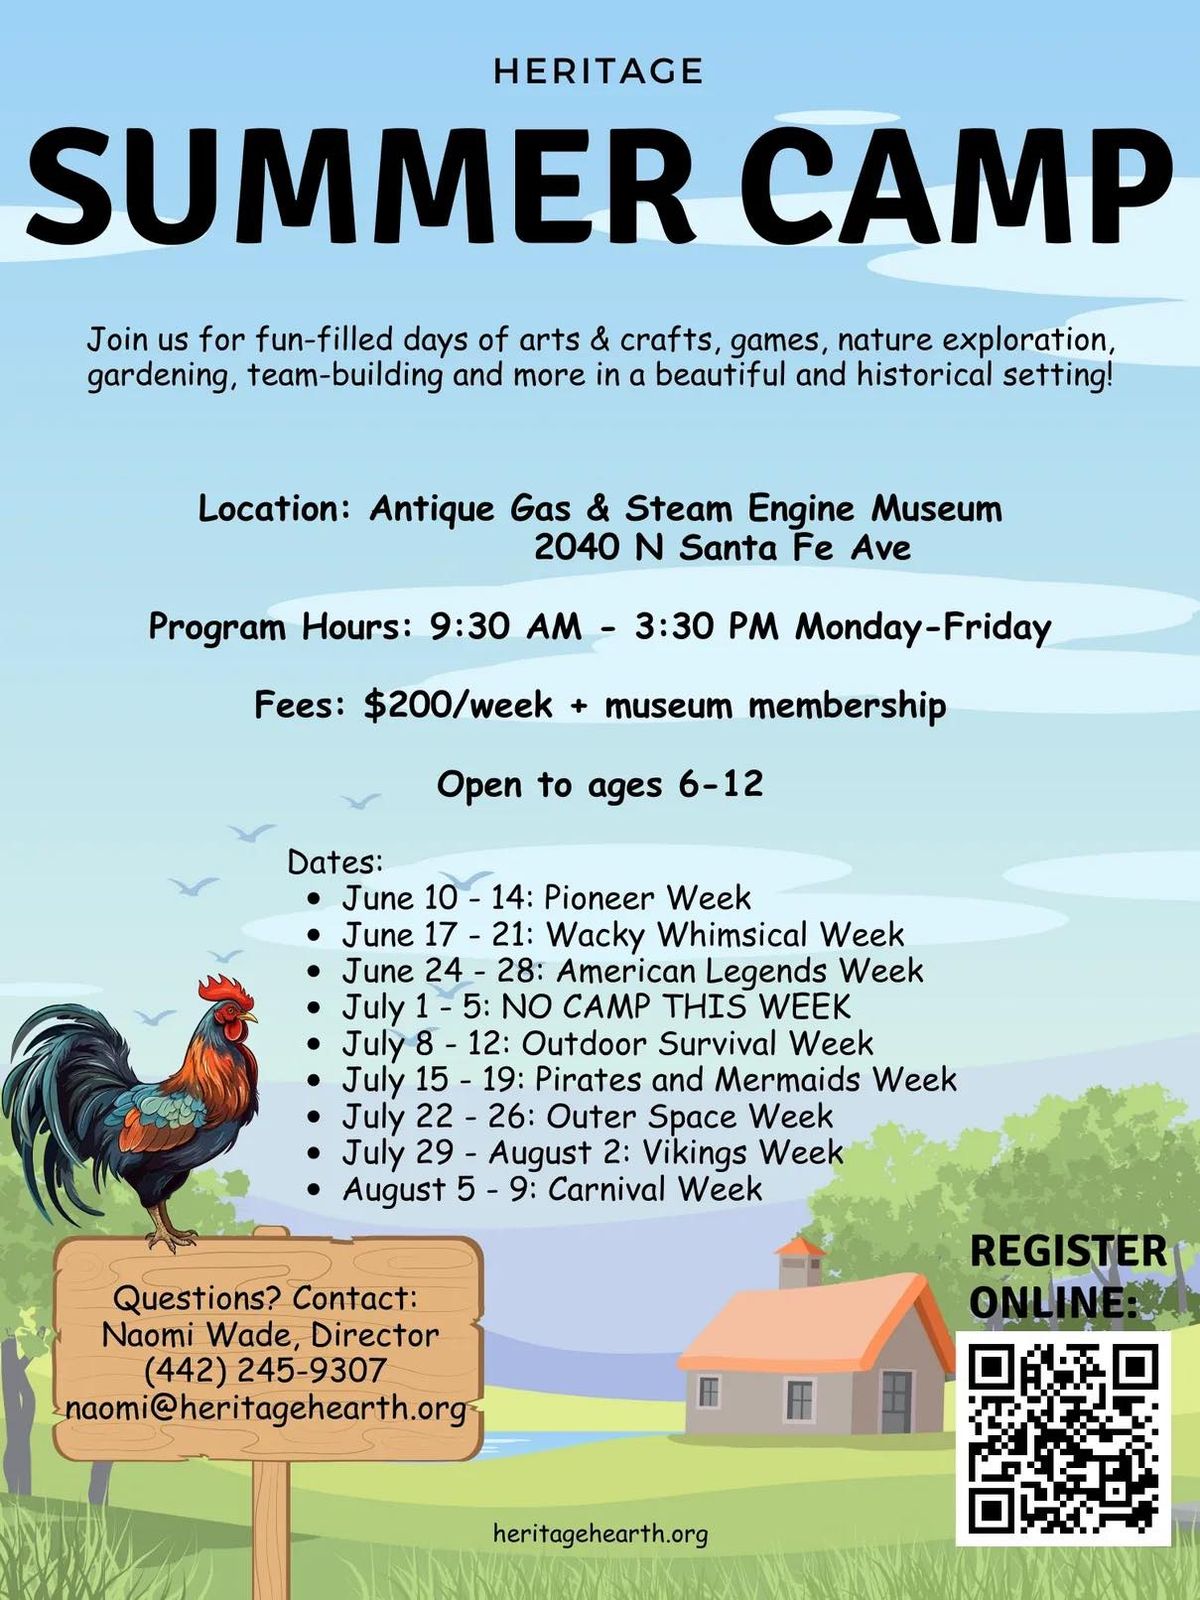 Heritage Summer Camp - Carnival Week